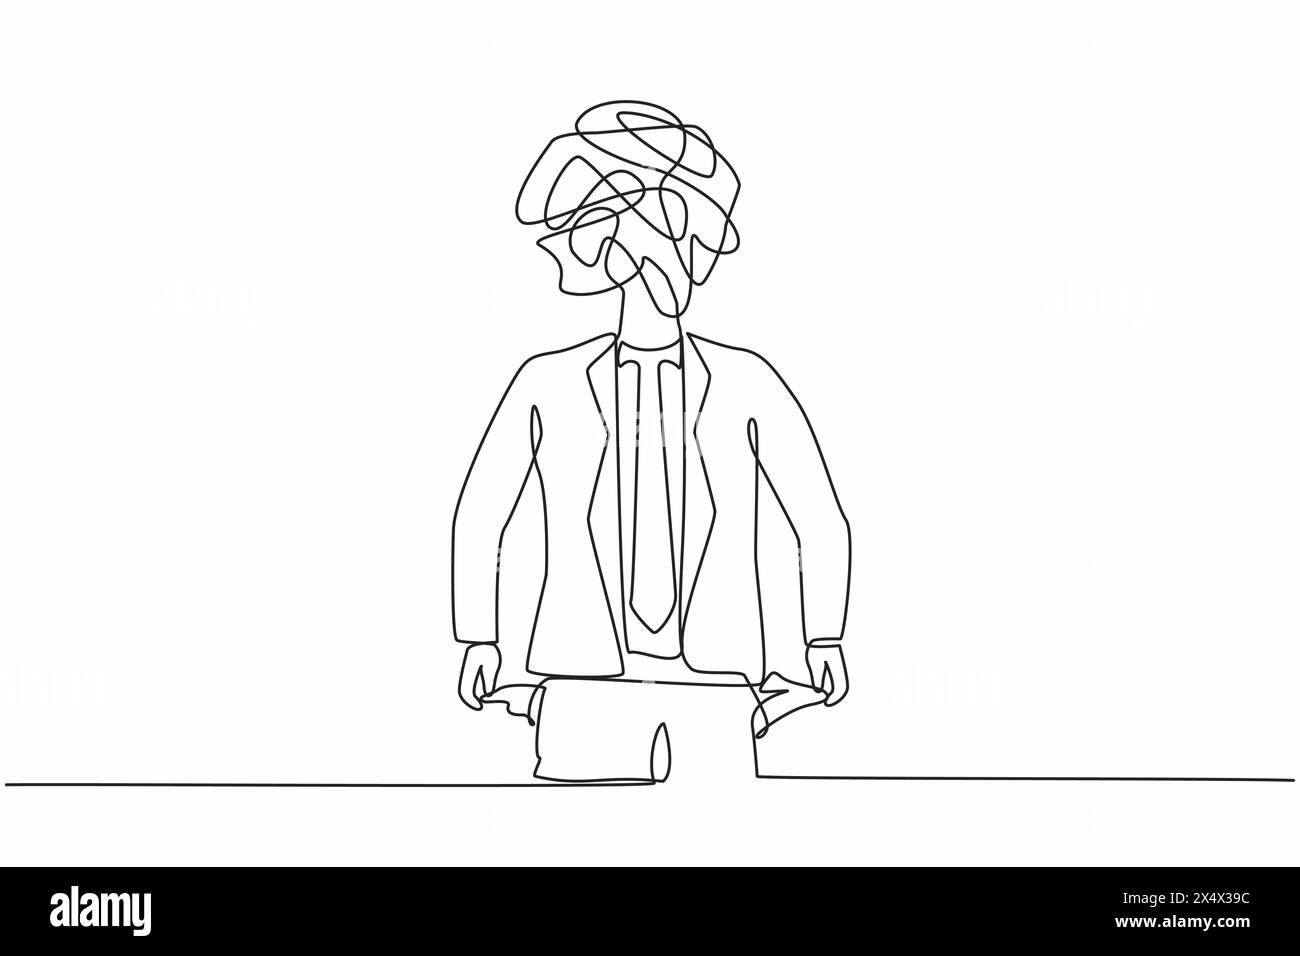 Simple homme d'affaires dessinant une ligne avec des griffonnages ronds au lieu d'une tête. Travailleur avec les poches tournées vers l'extérieur, n'ayant pas d'argent. Concept de personne cassé. Illustration de Vecteur